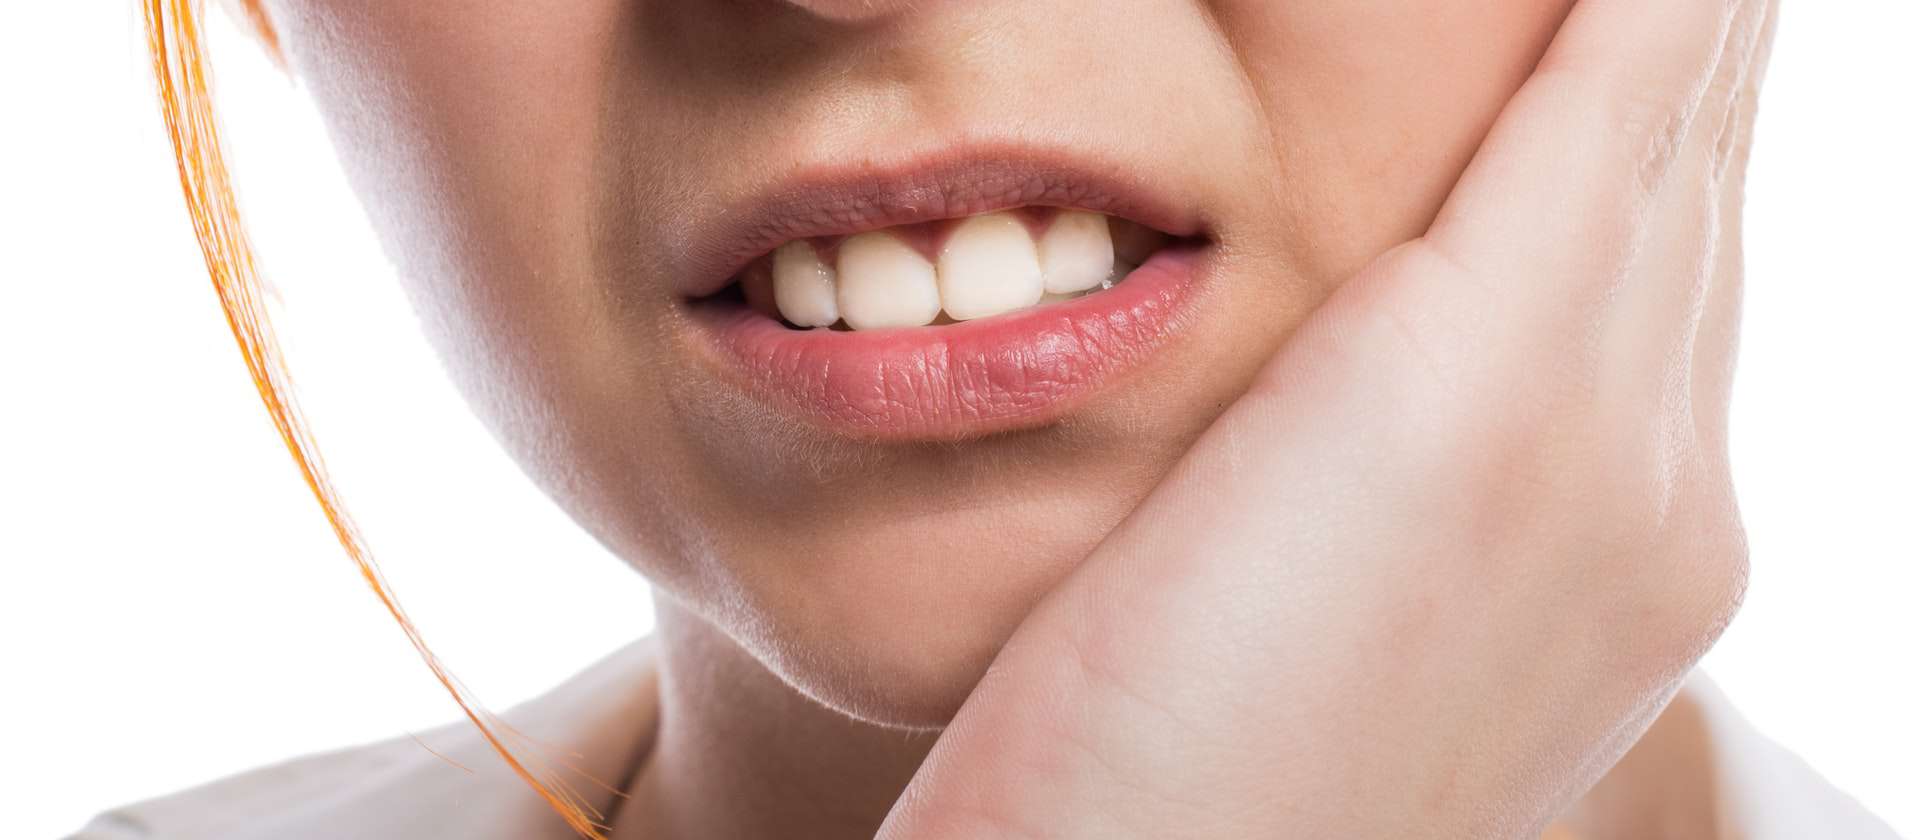 10 مورد که باید در مورد دندان عقل تحت فشار بدانید.